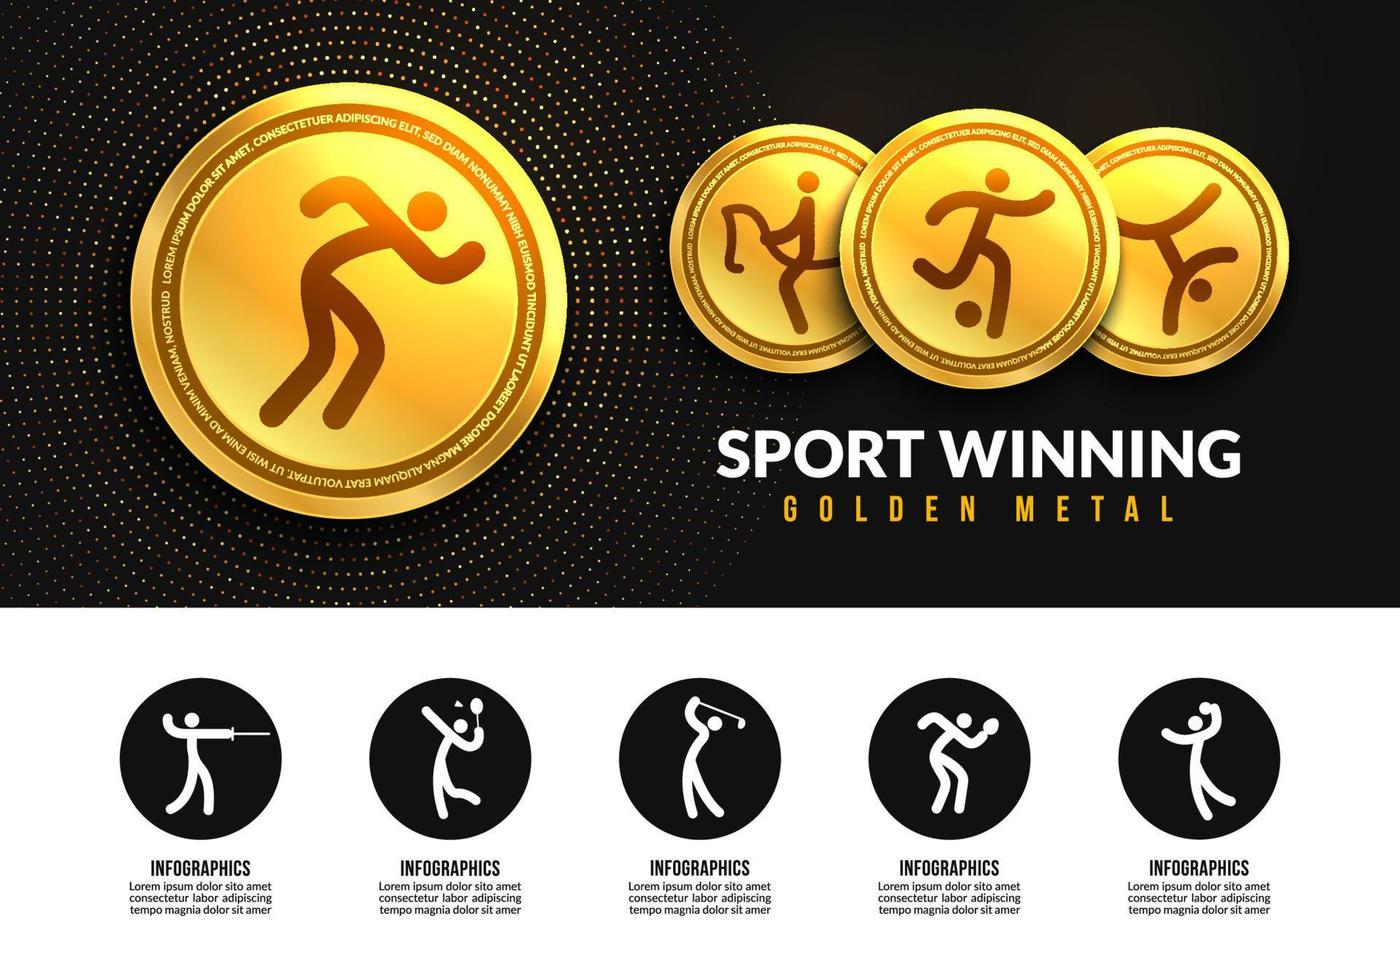 medaglie d'oro vinte nello sport, icone infografiche sportive, concetto di logotipo di club sportivo. medaglie realistiche per il primo secondo terzo posto vettore